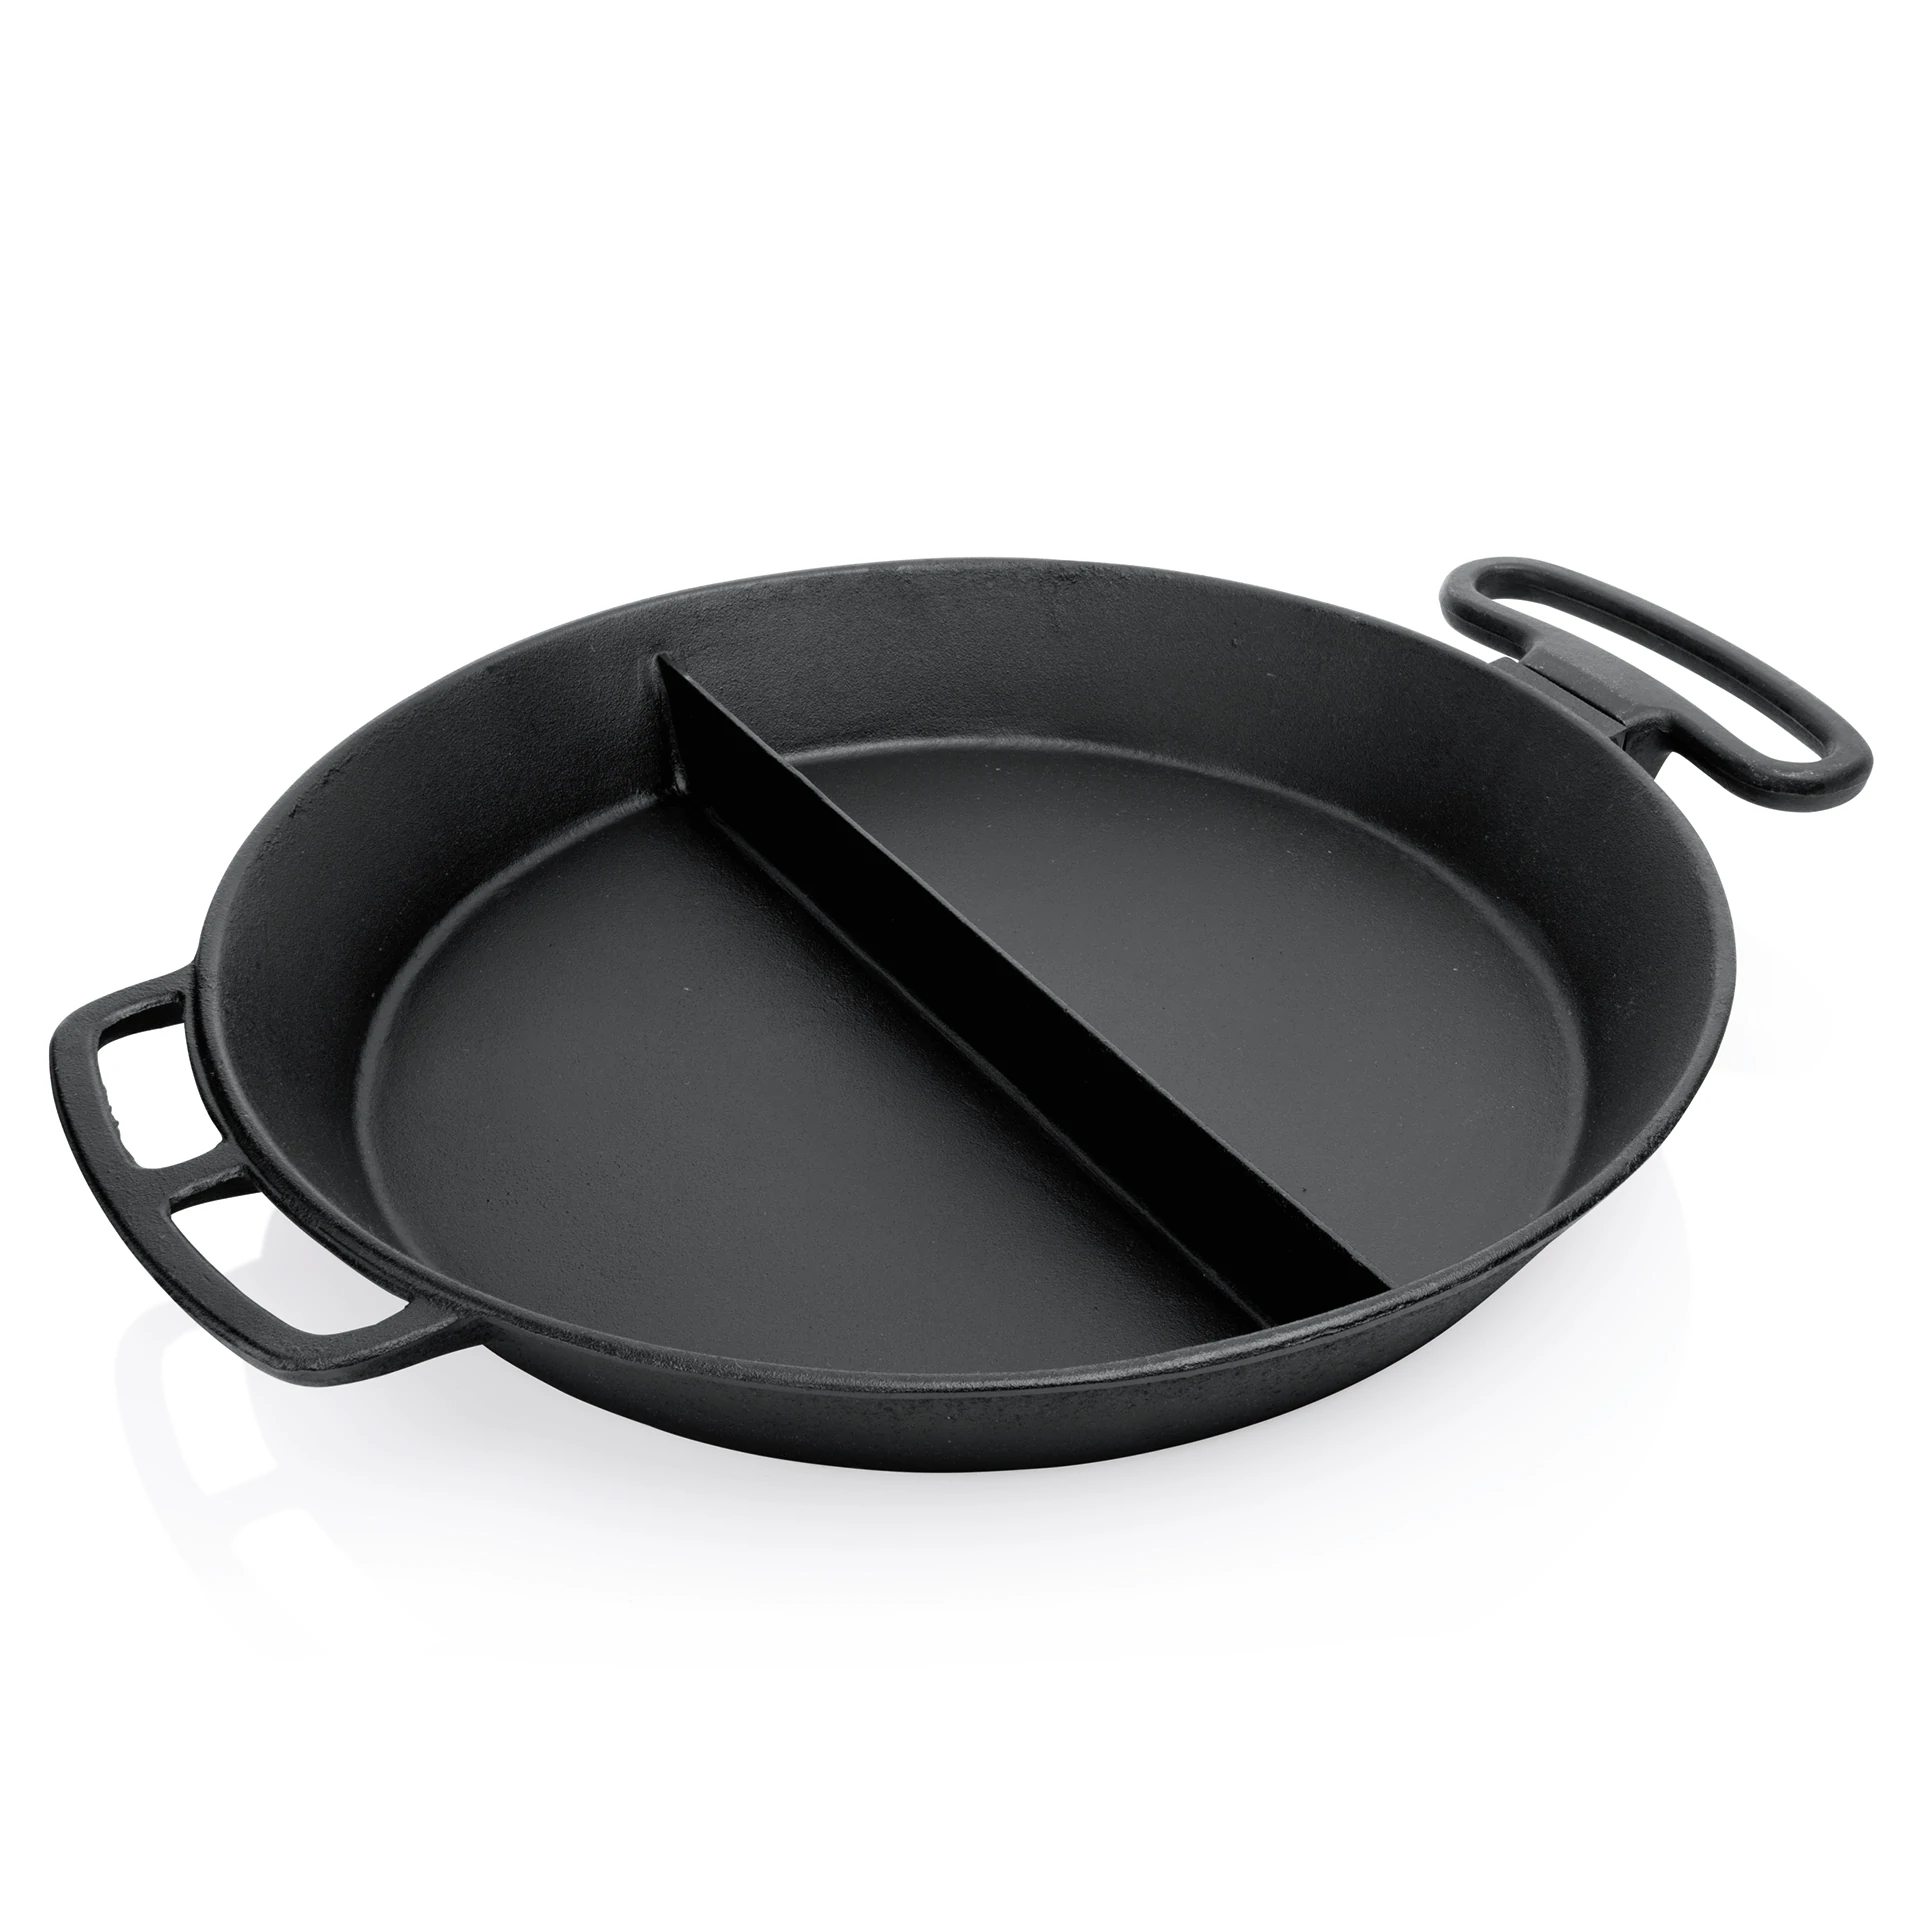 Giant frying pan